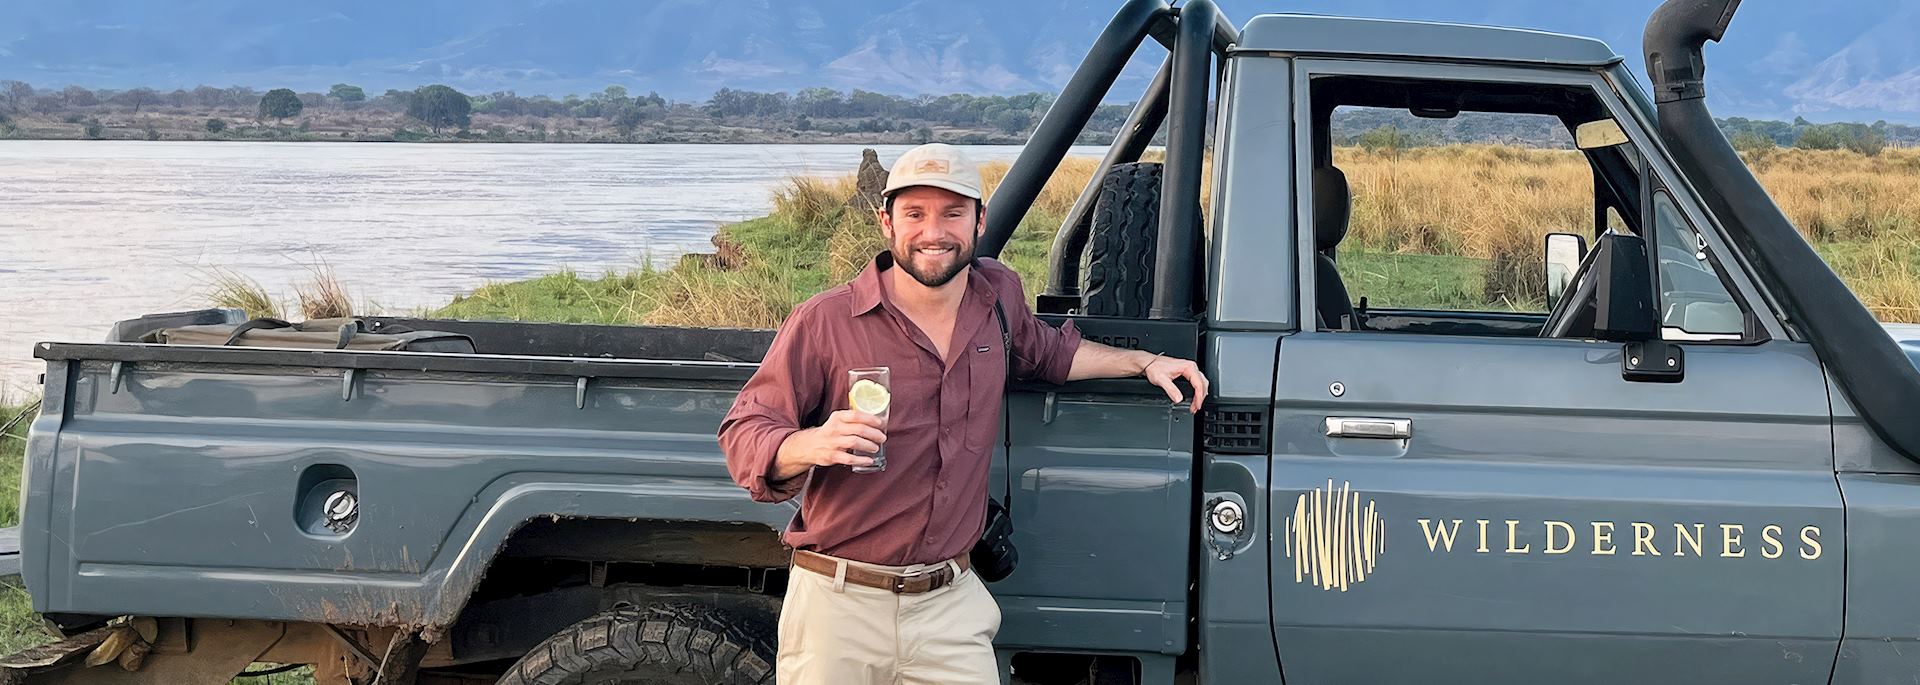 Tom on safari in Africa